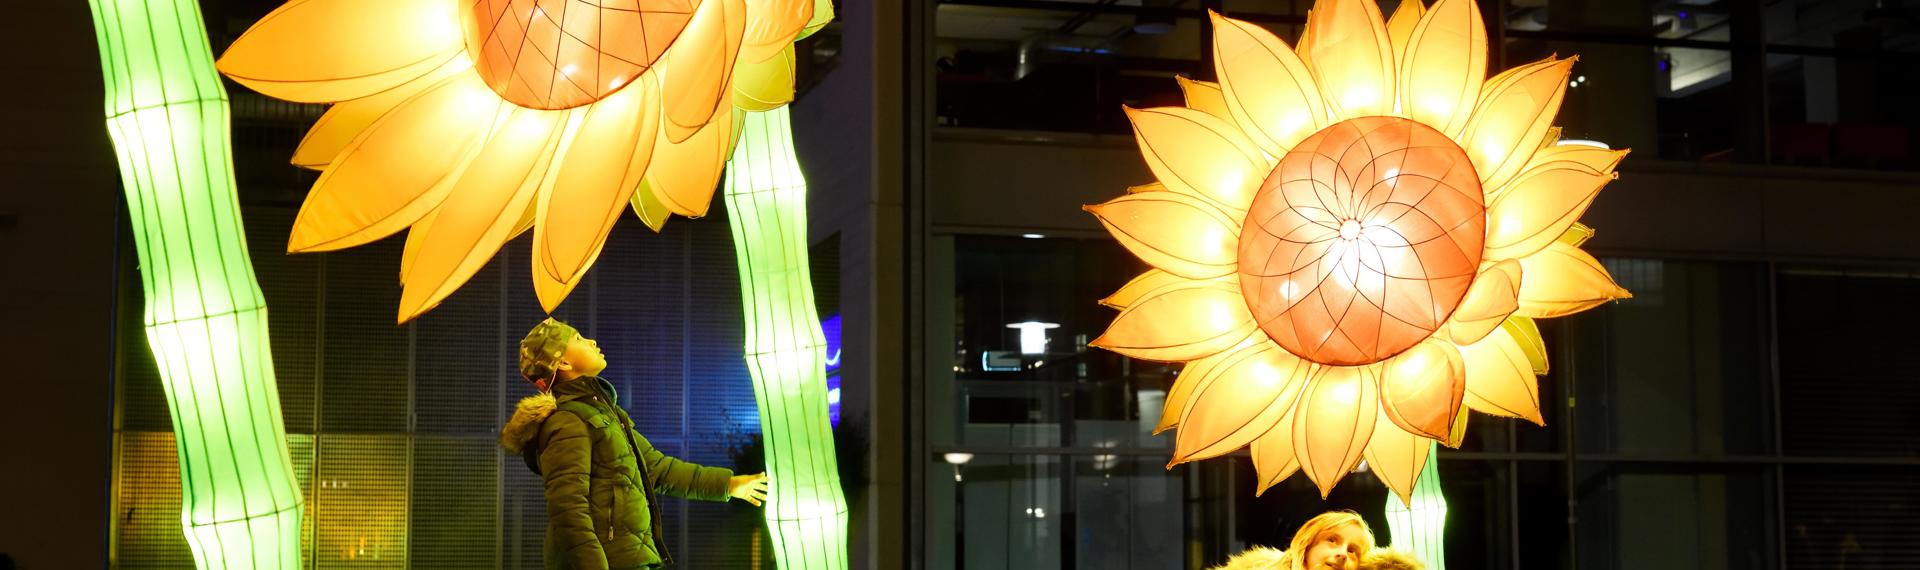 Jedes Jahr verwandeln Künstler Eindhoven mit überraschendem Design in GLOW: eine stadtweite Ausstellung von Lichtkunst unter freiem Himmel